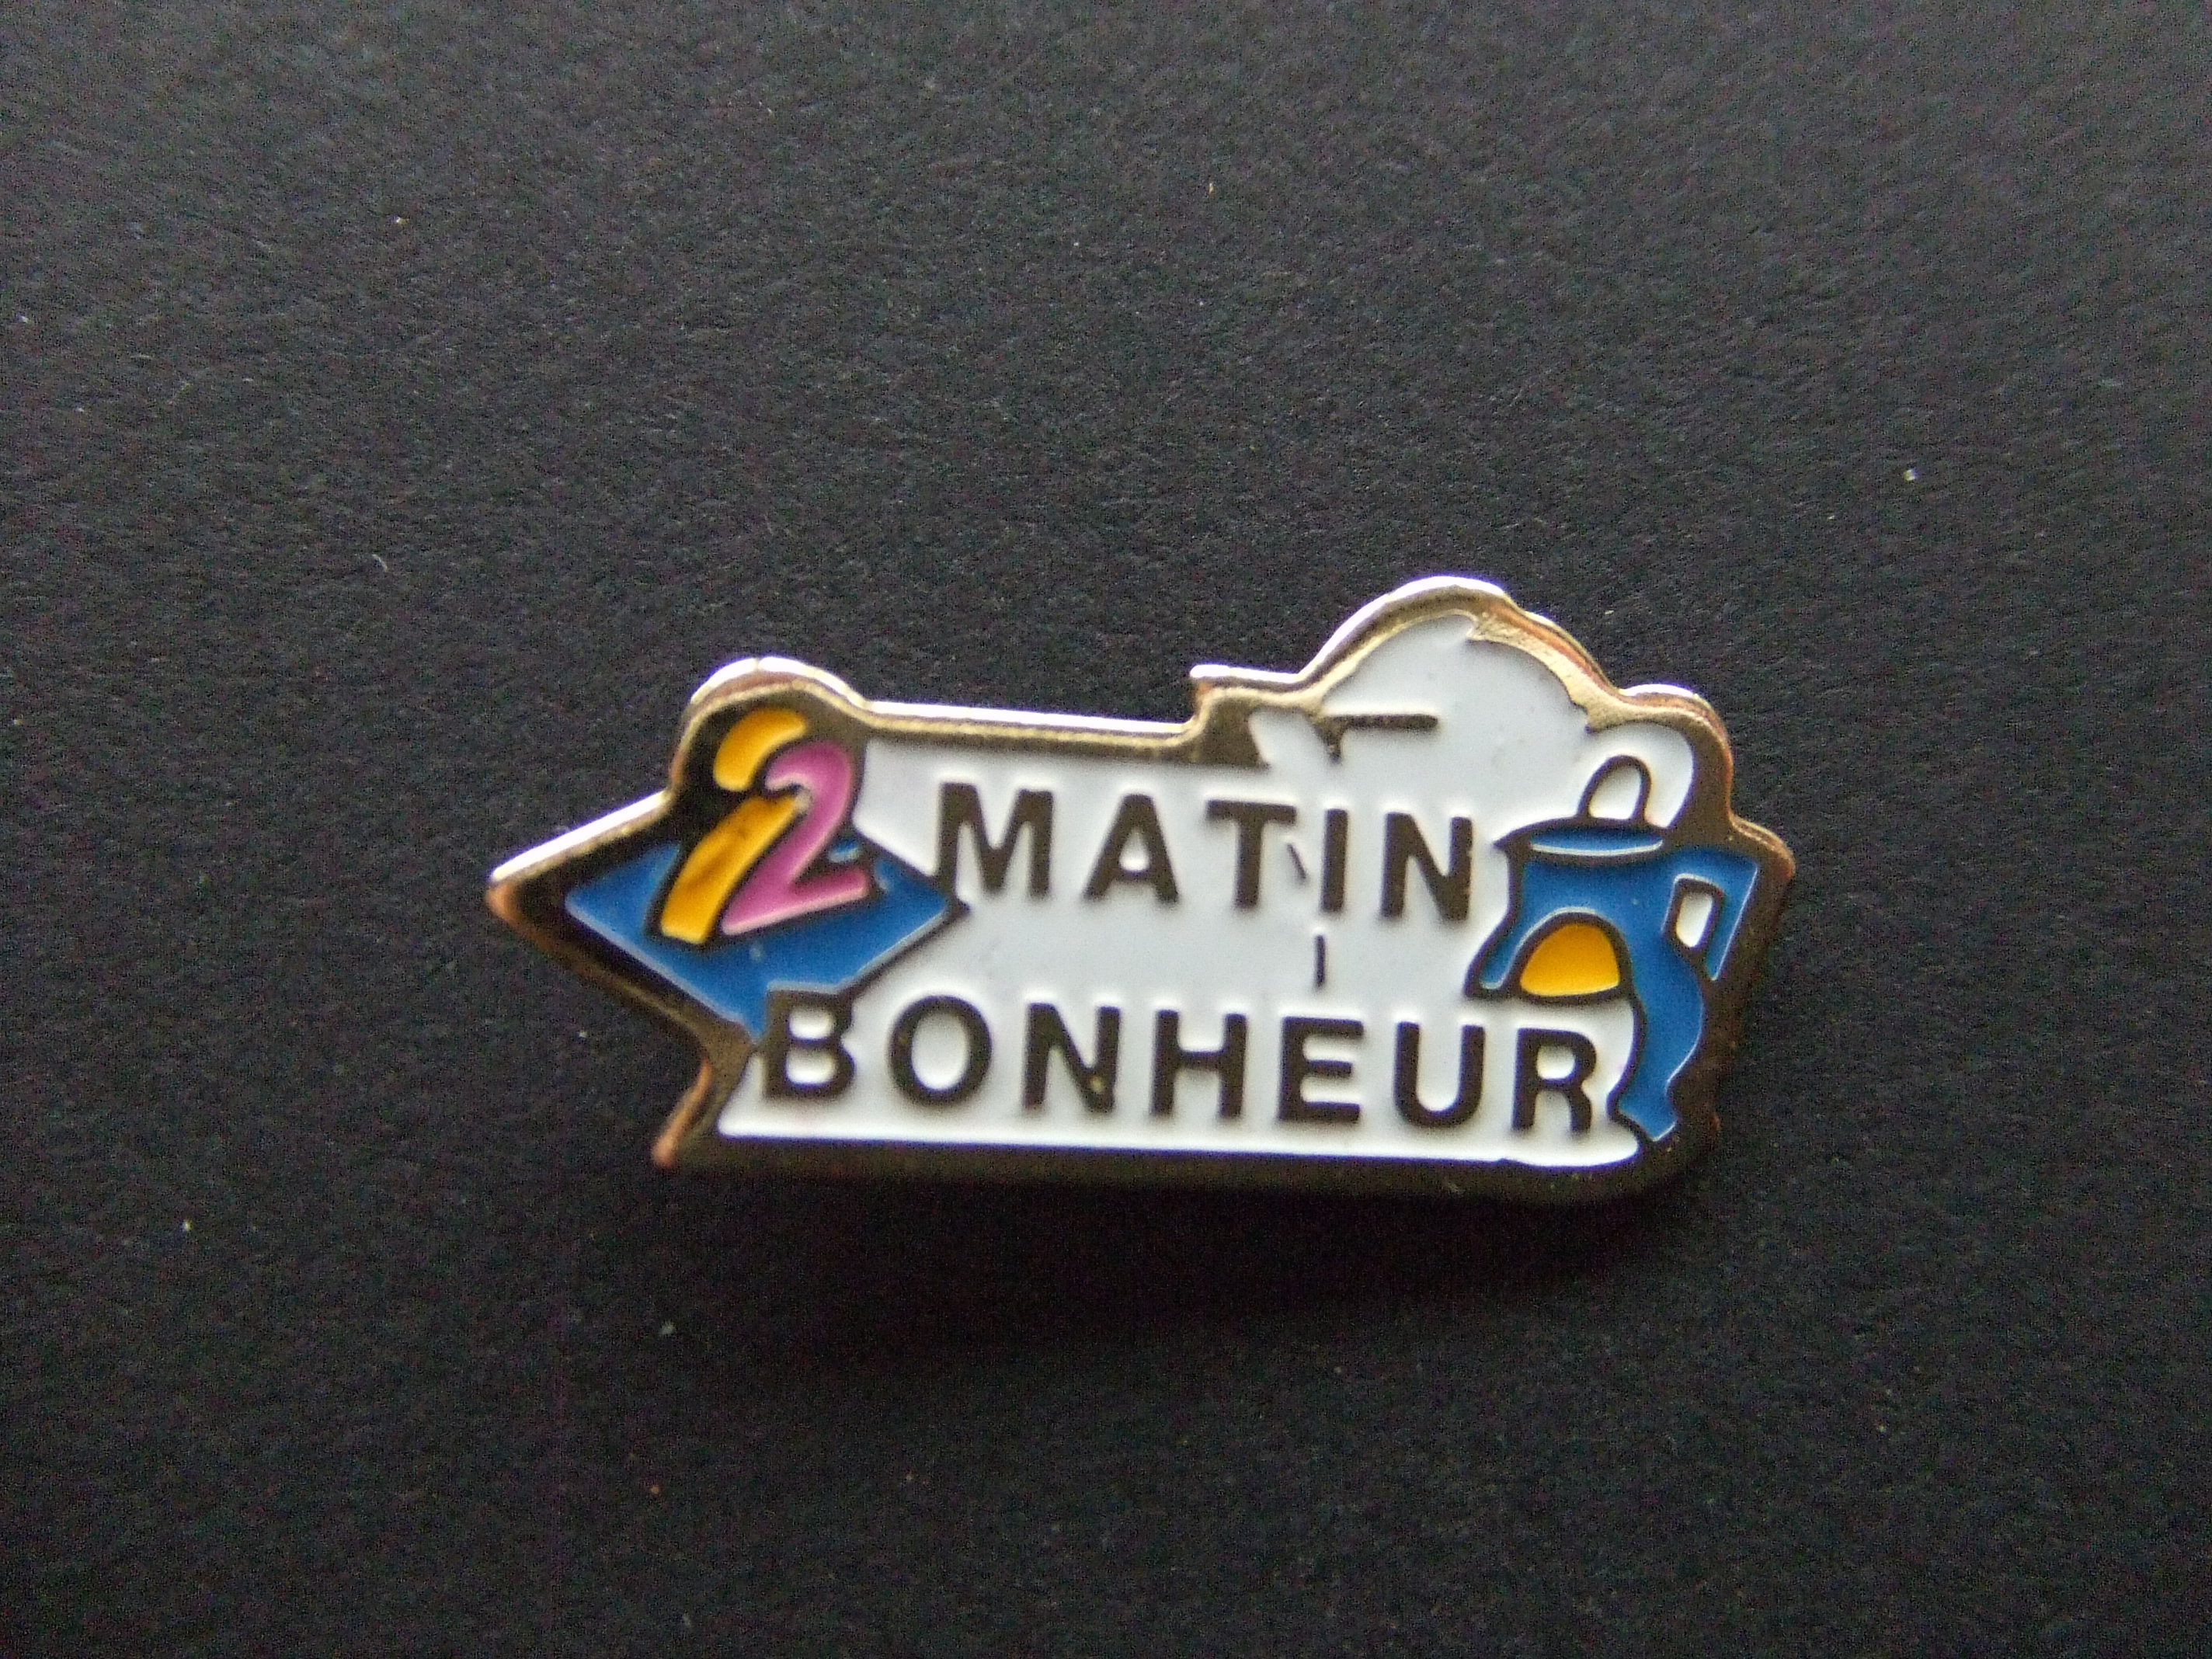 TV programma Matin Bonheur ochtendprogramma Frankrijk